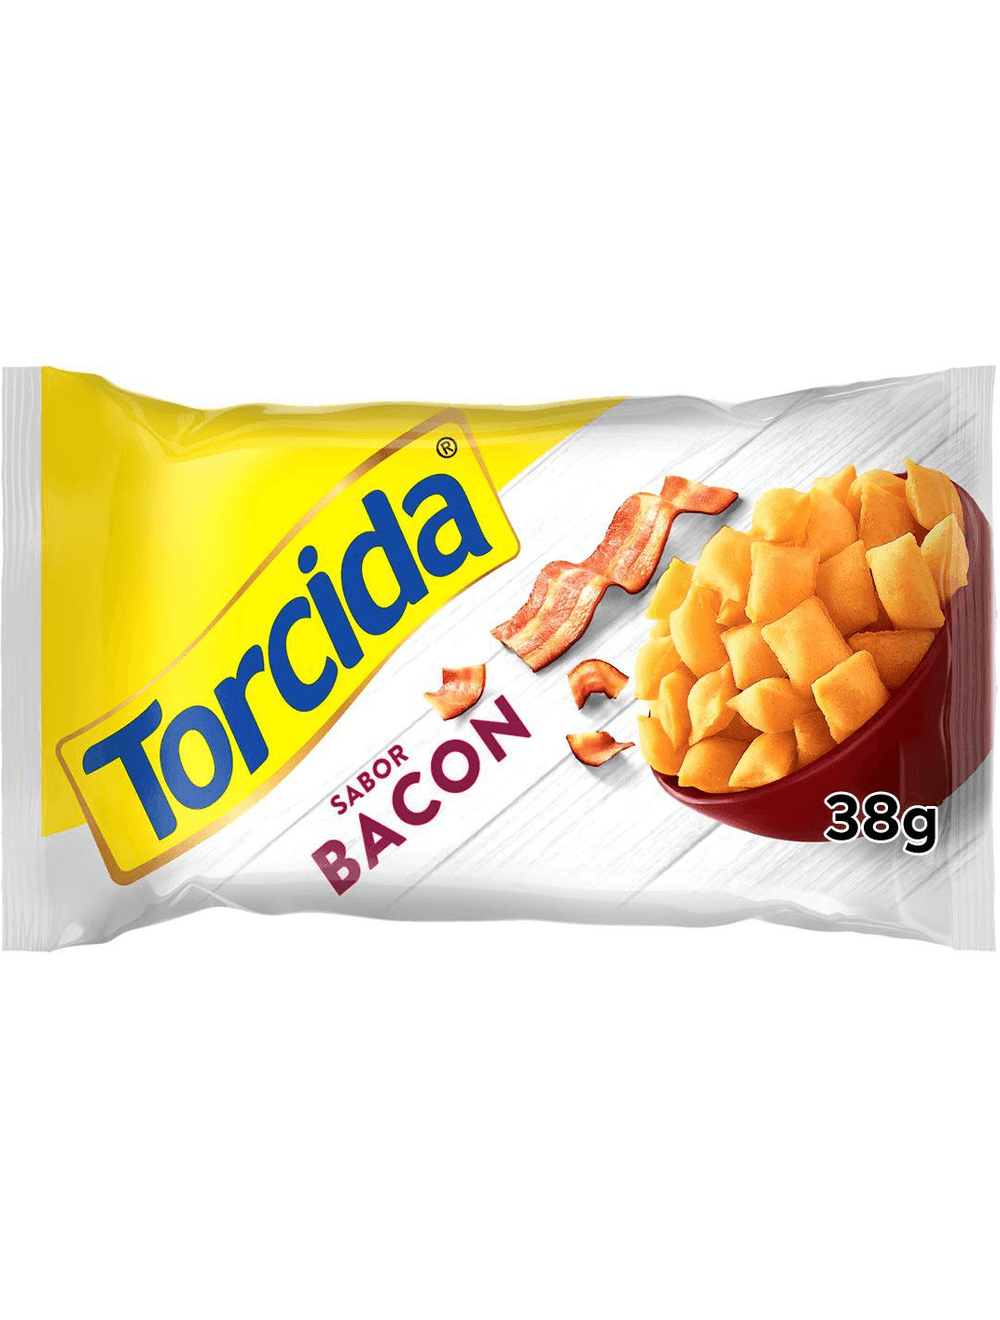 Salgadinho De Milho Onda Requeijão Elma Chips Cheetos Pacote 230g - 1